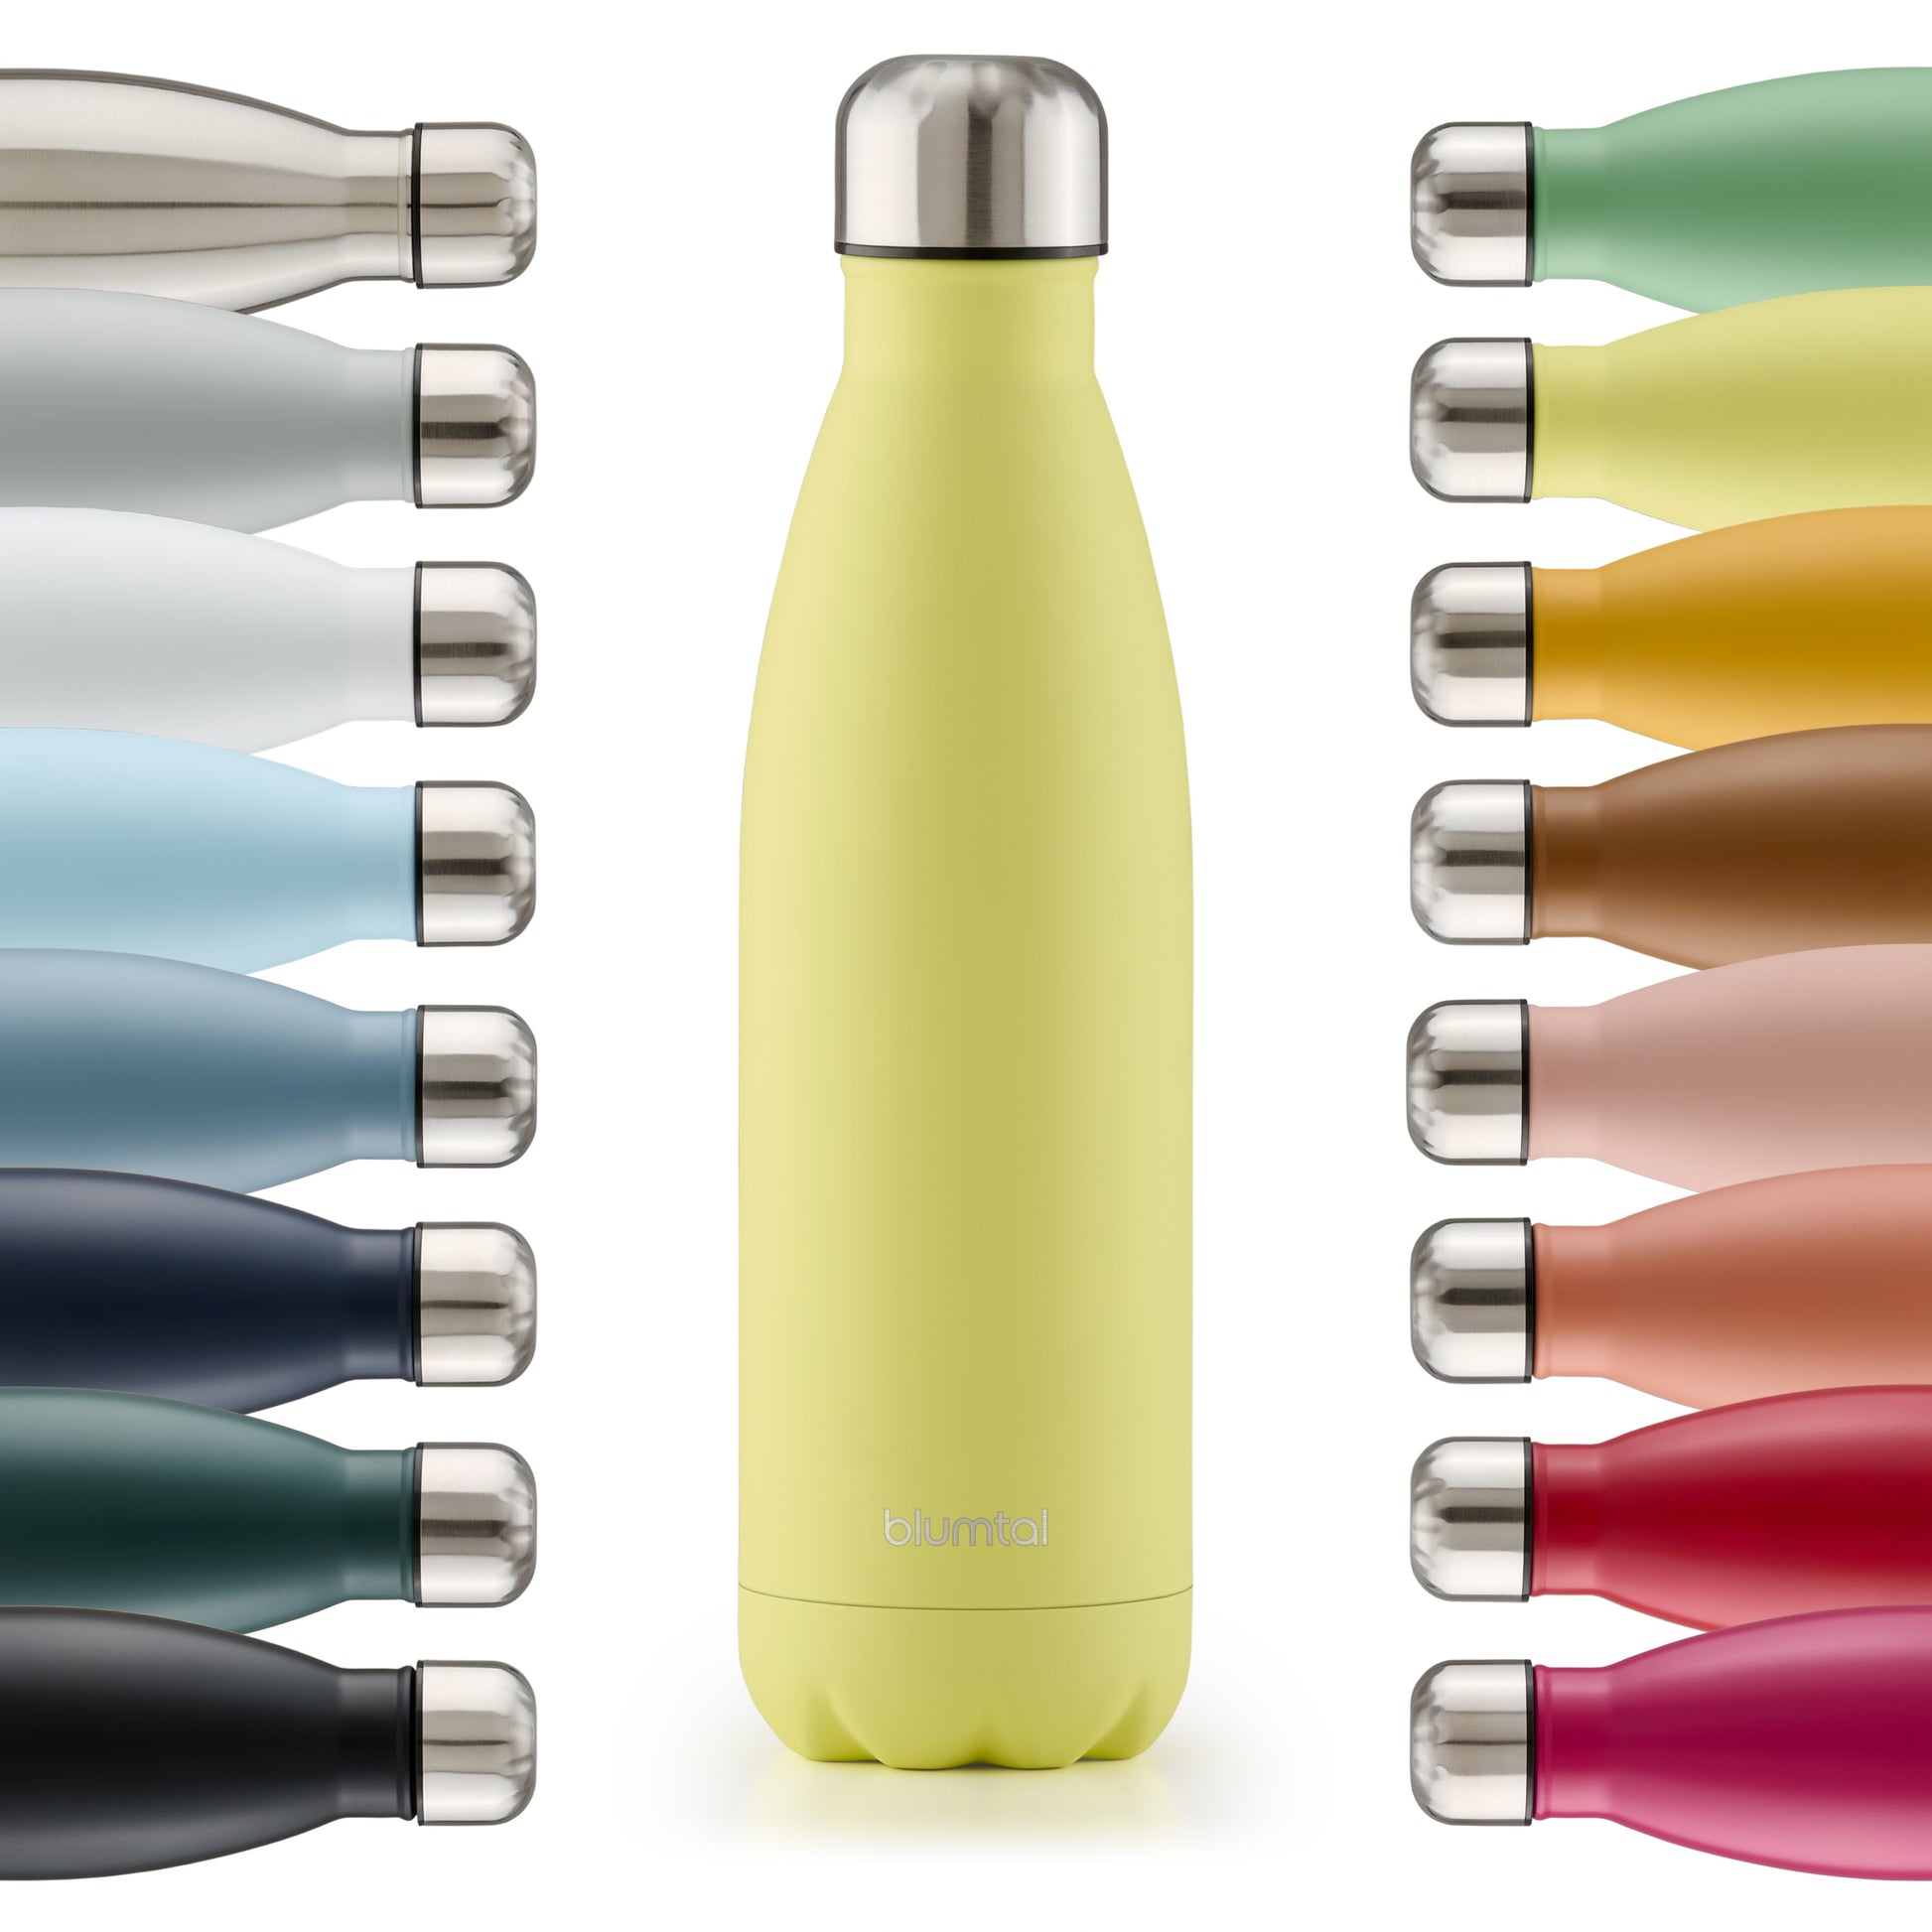 Farbige Auswahl an isolierten Edelstahl-Trinkflaschen von blumtal in einer Reihe angeordnet mit Fokus auf eine vorderseitige new gelb farbene Flasche.